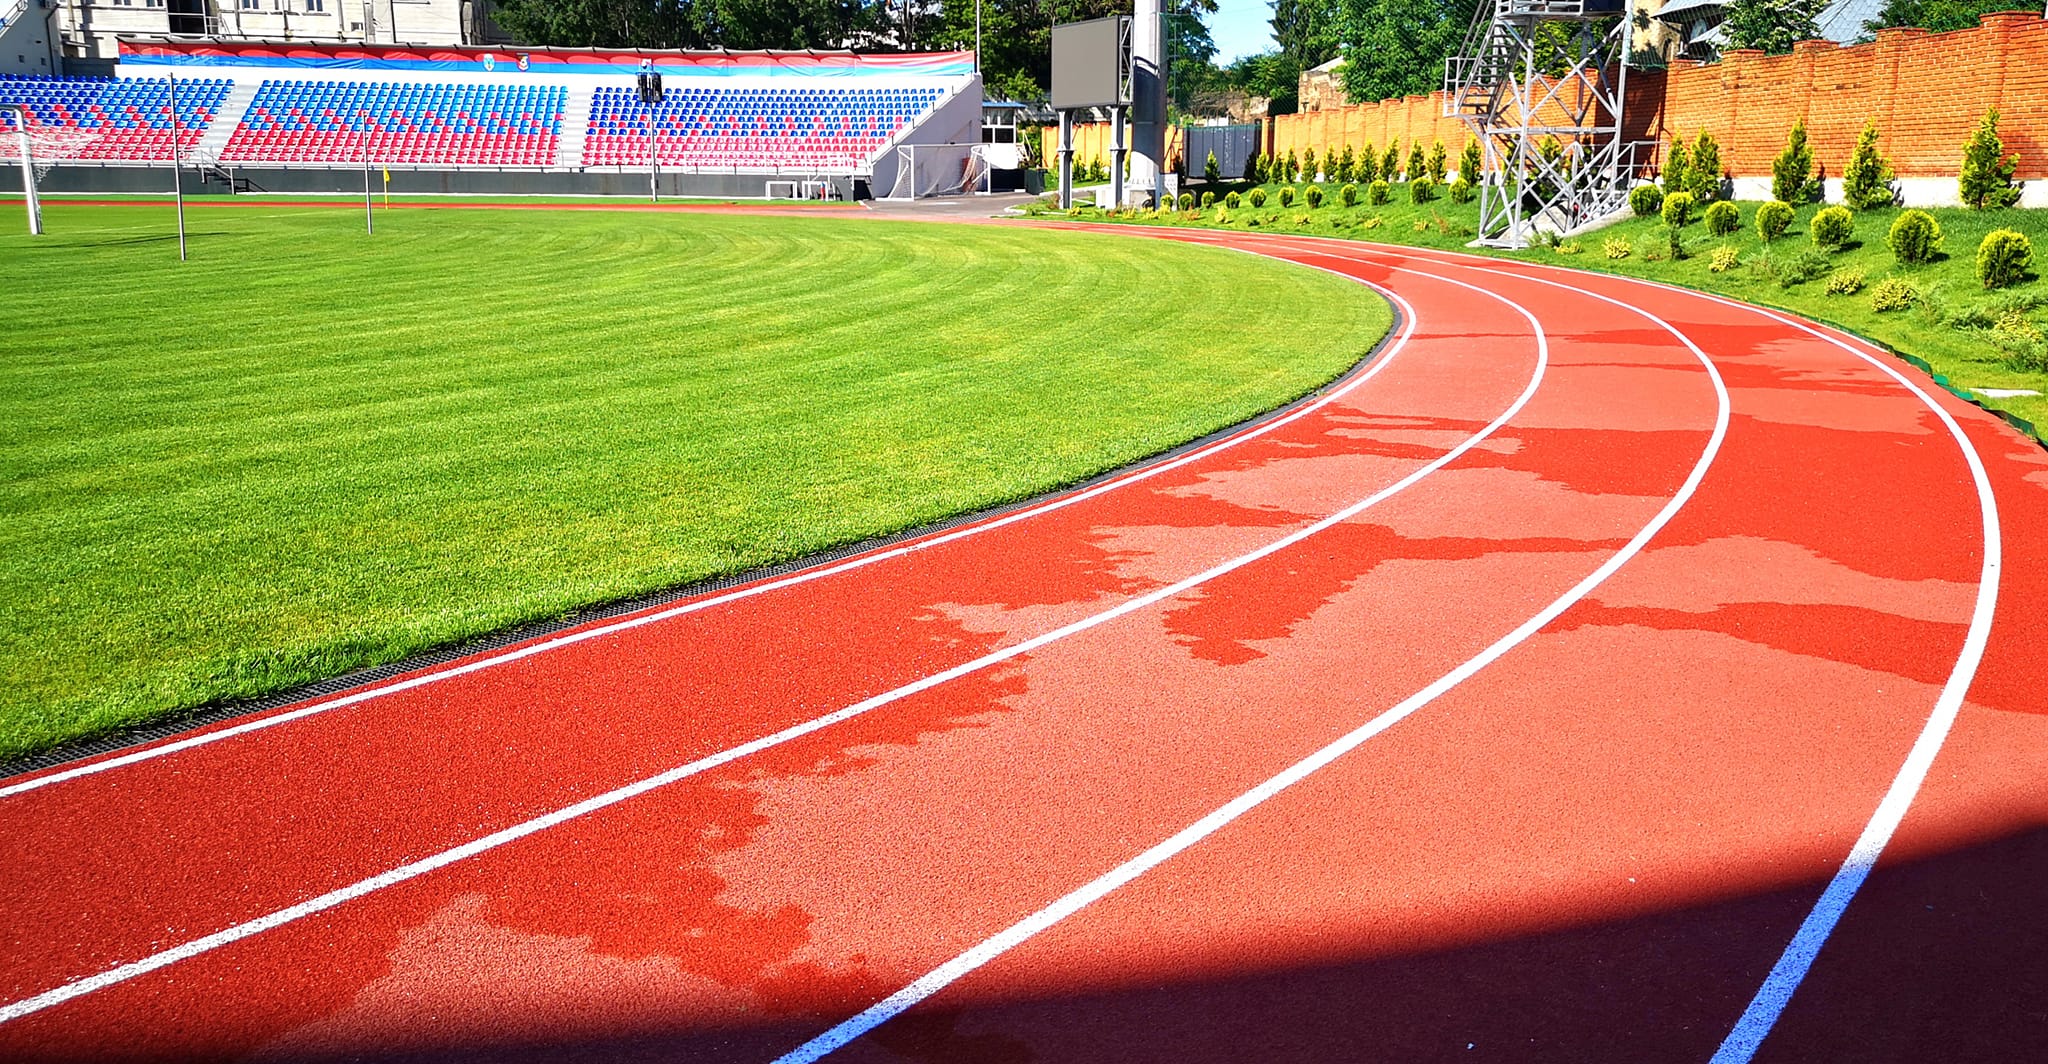 Veste excelentă pentru iubitorii de mișcare din municipiul Târgoviște! De astăzi, 1 iulie, se poate alerga pe pista de atletism a Stadionului „Eugen Popescu”, cu respectarea strictă a regulamentului de funcționare a pistei.